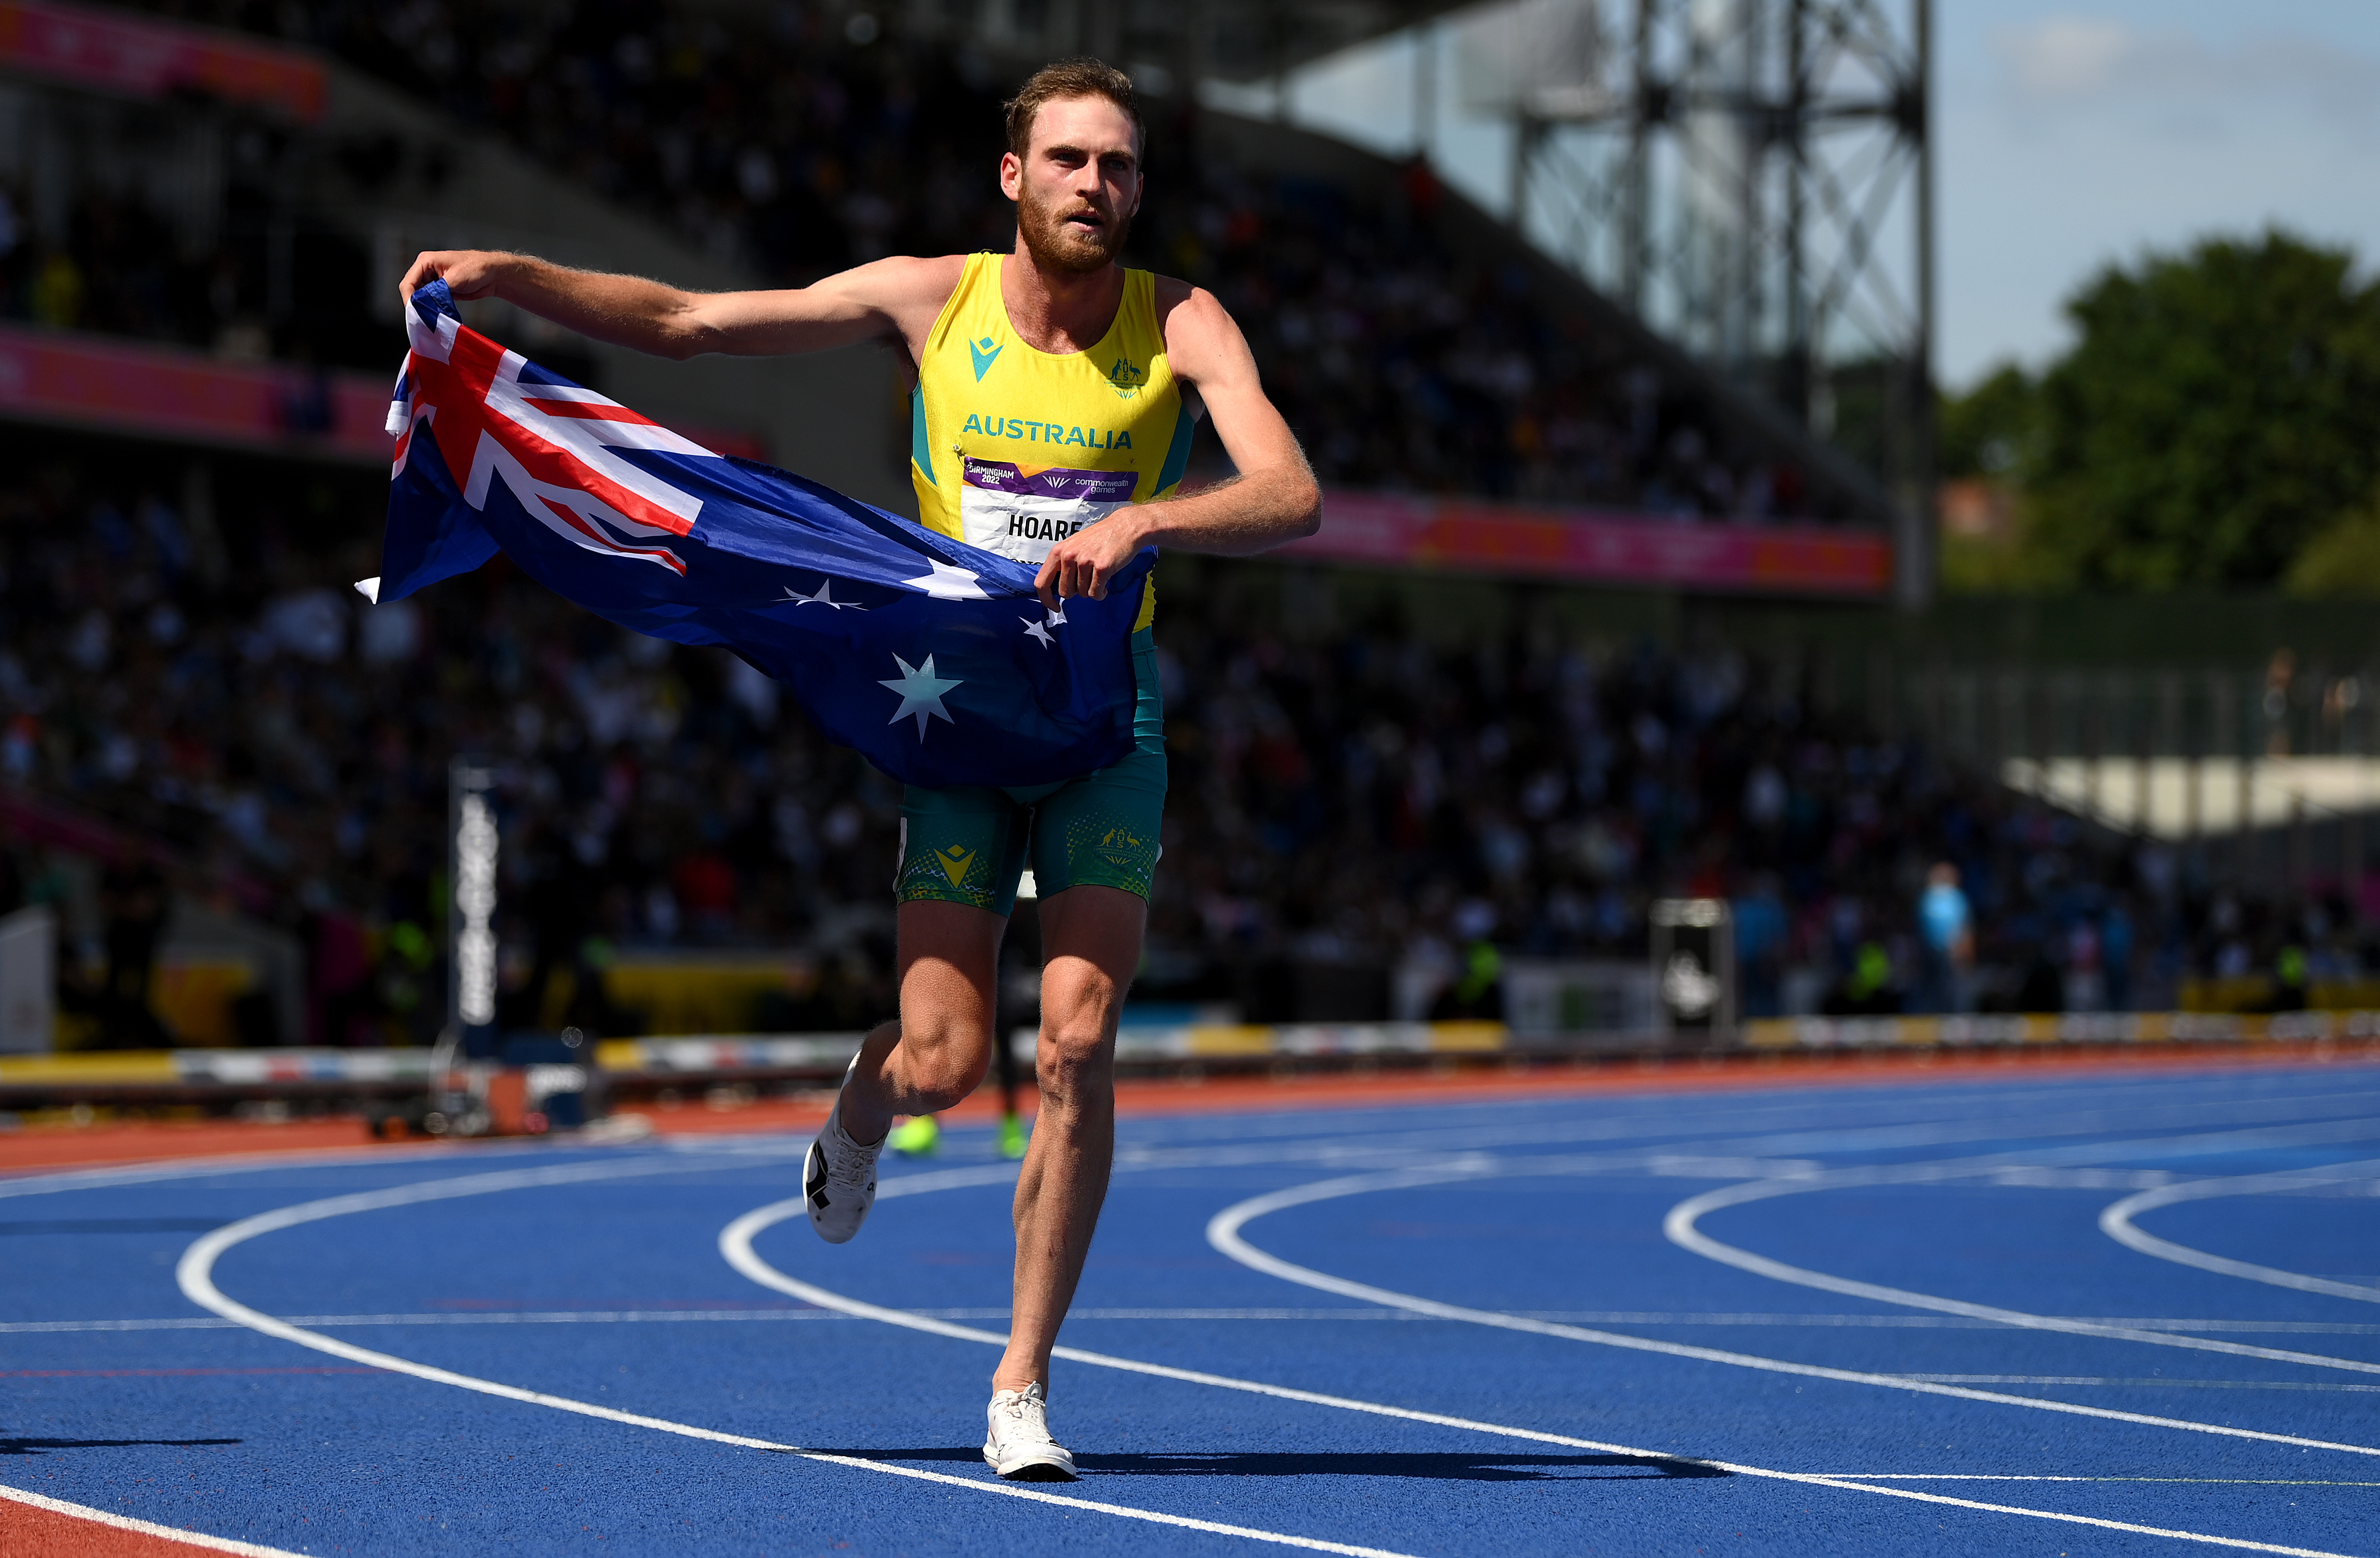 Oliver Hoare, 1500m or, course, résultats, vainqueur, Australien, interview